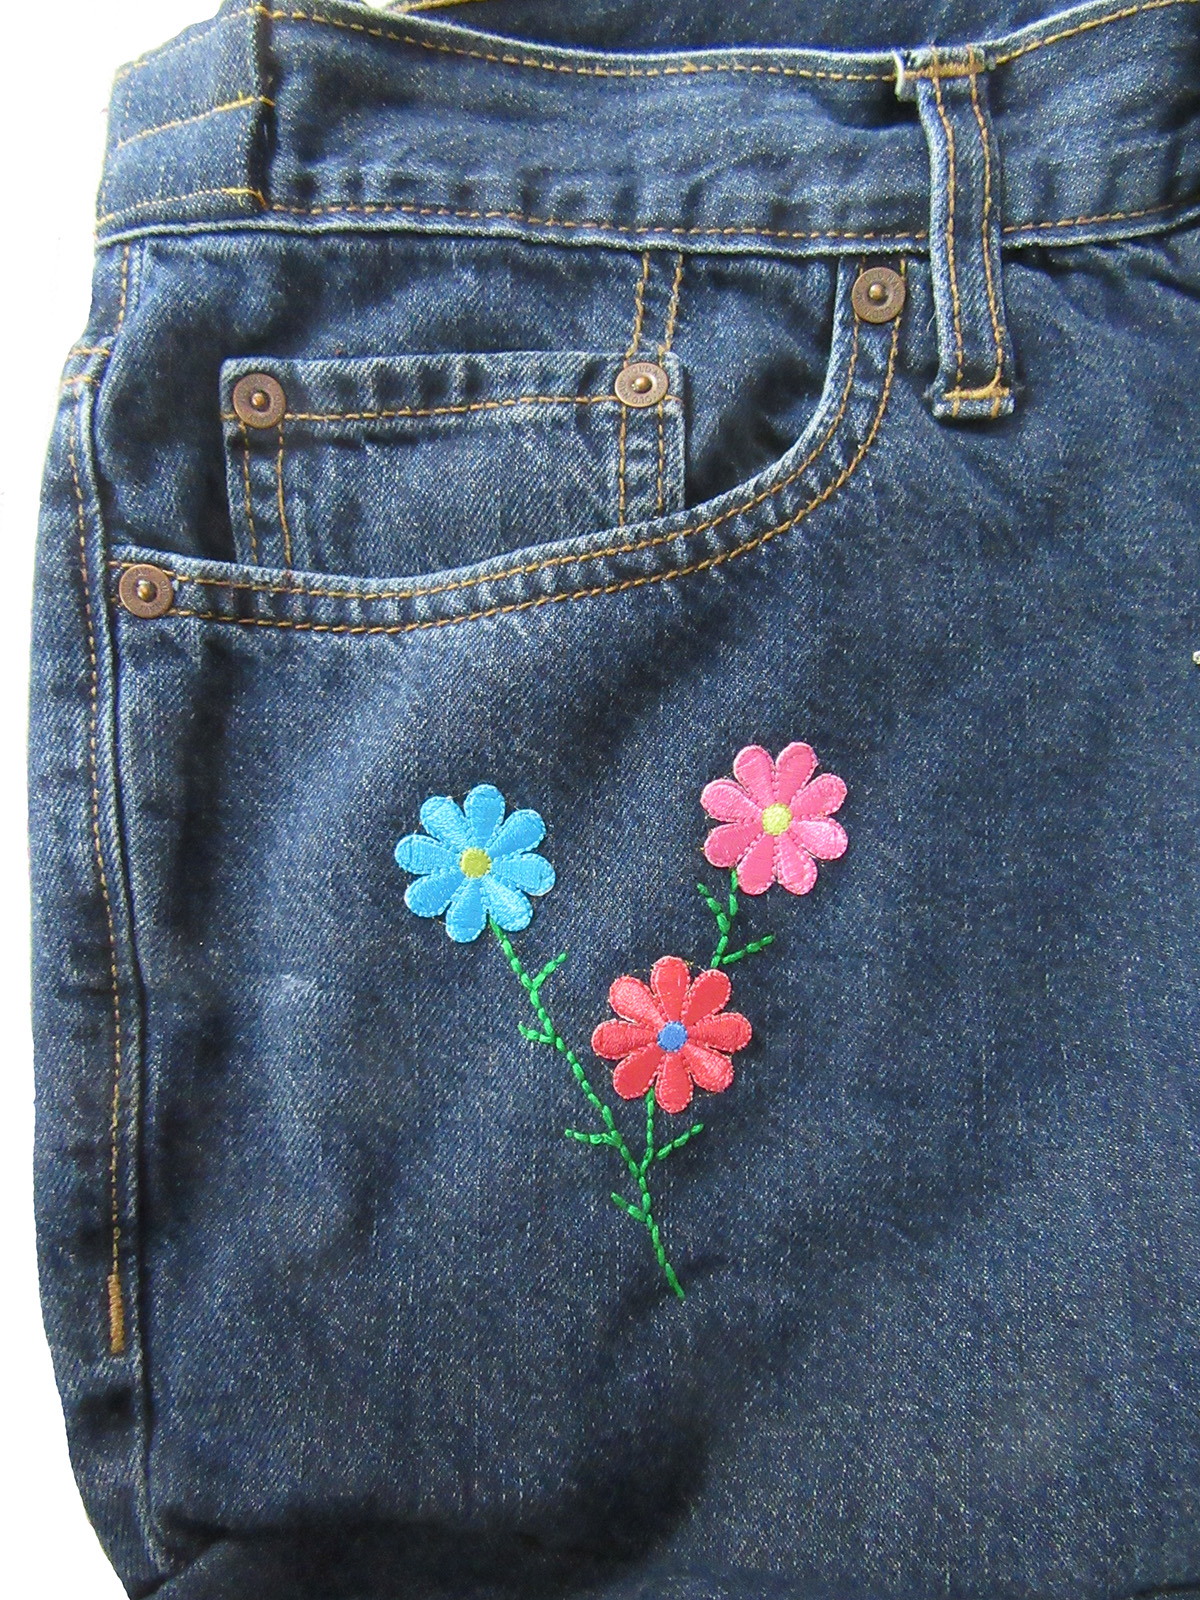 Small denim bag, handmade jeans purse for various essentials . : r/handmade